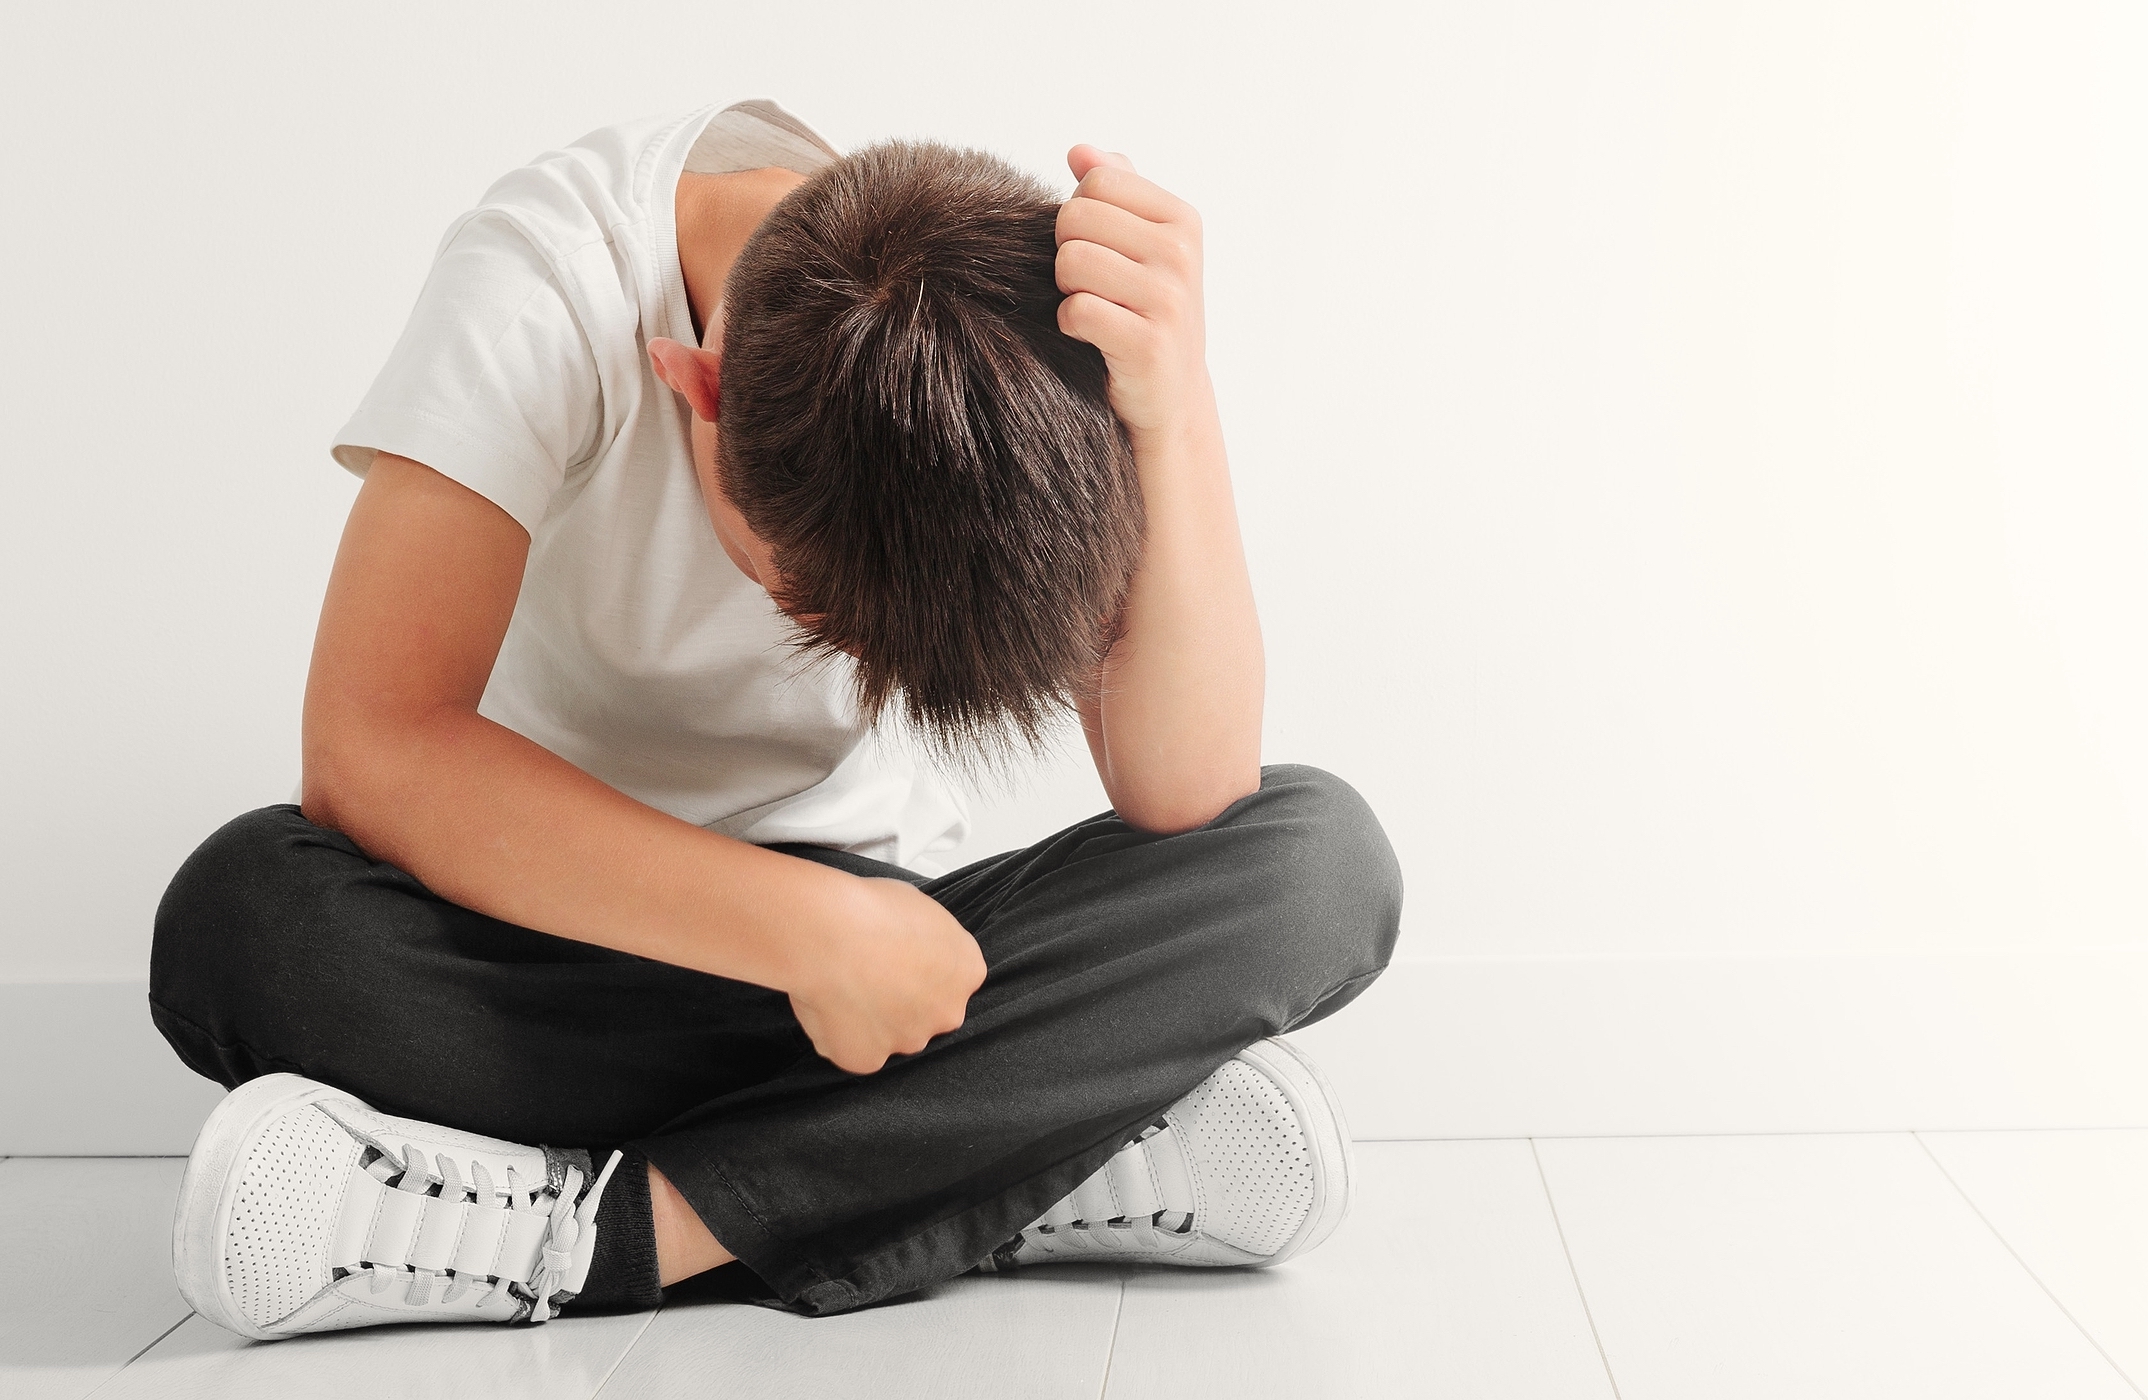 El alumnado con autismo, más vulnerable al acoso escolar